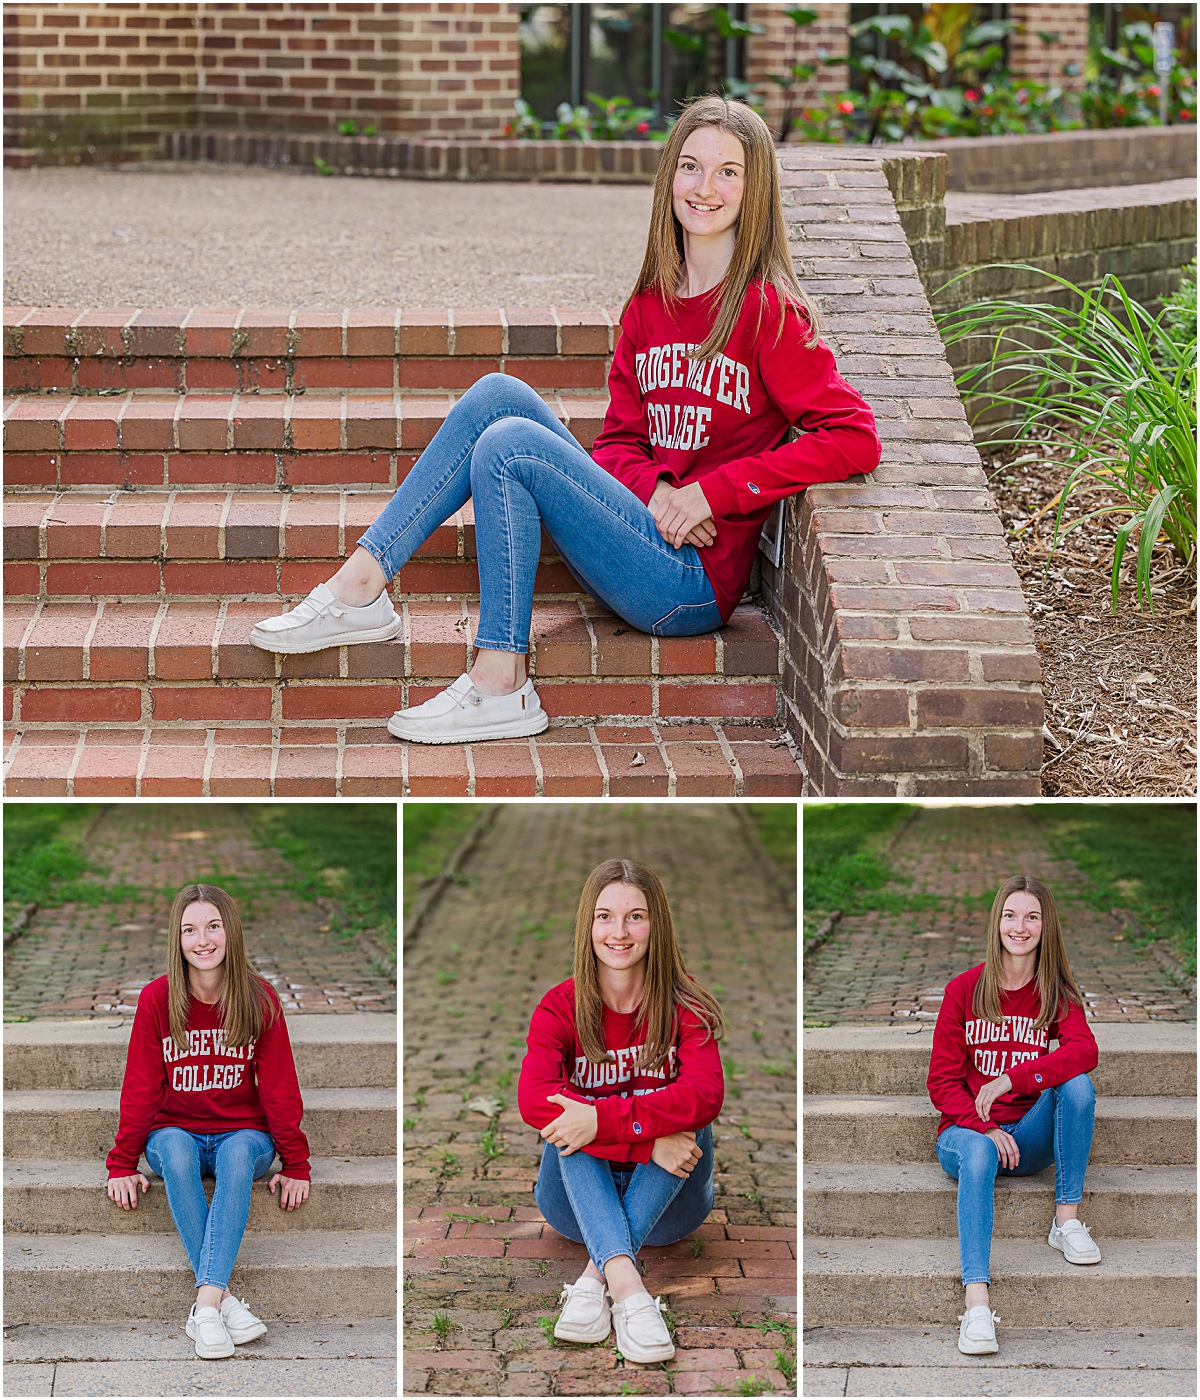 Jerica posing in her Bridgewater College sweatshirt